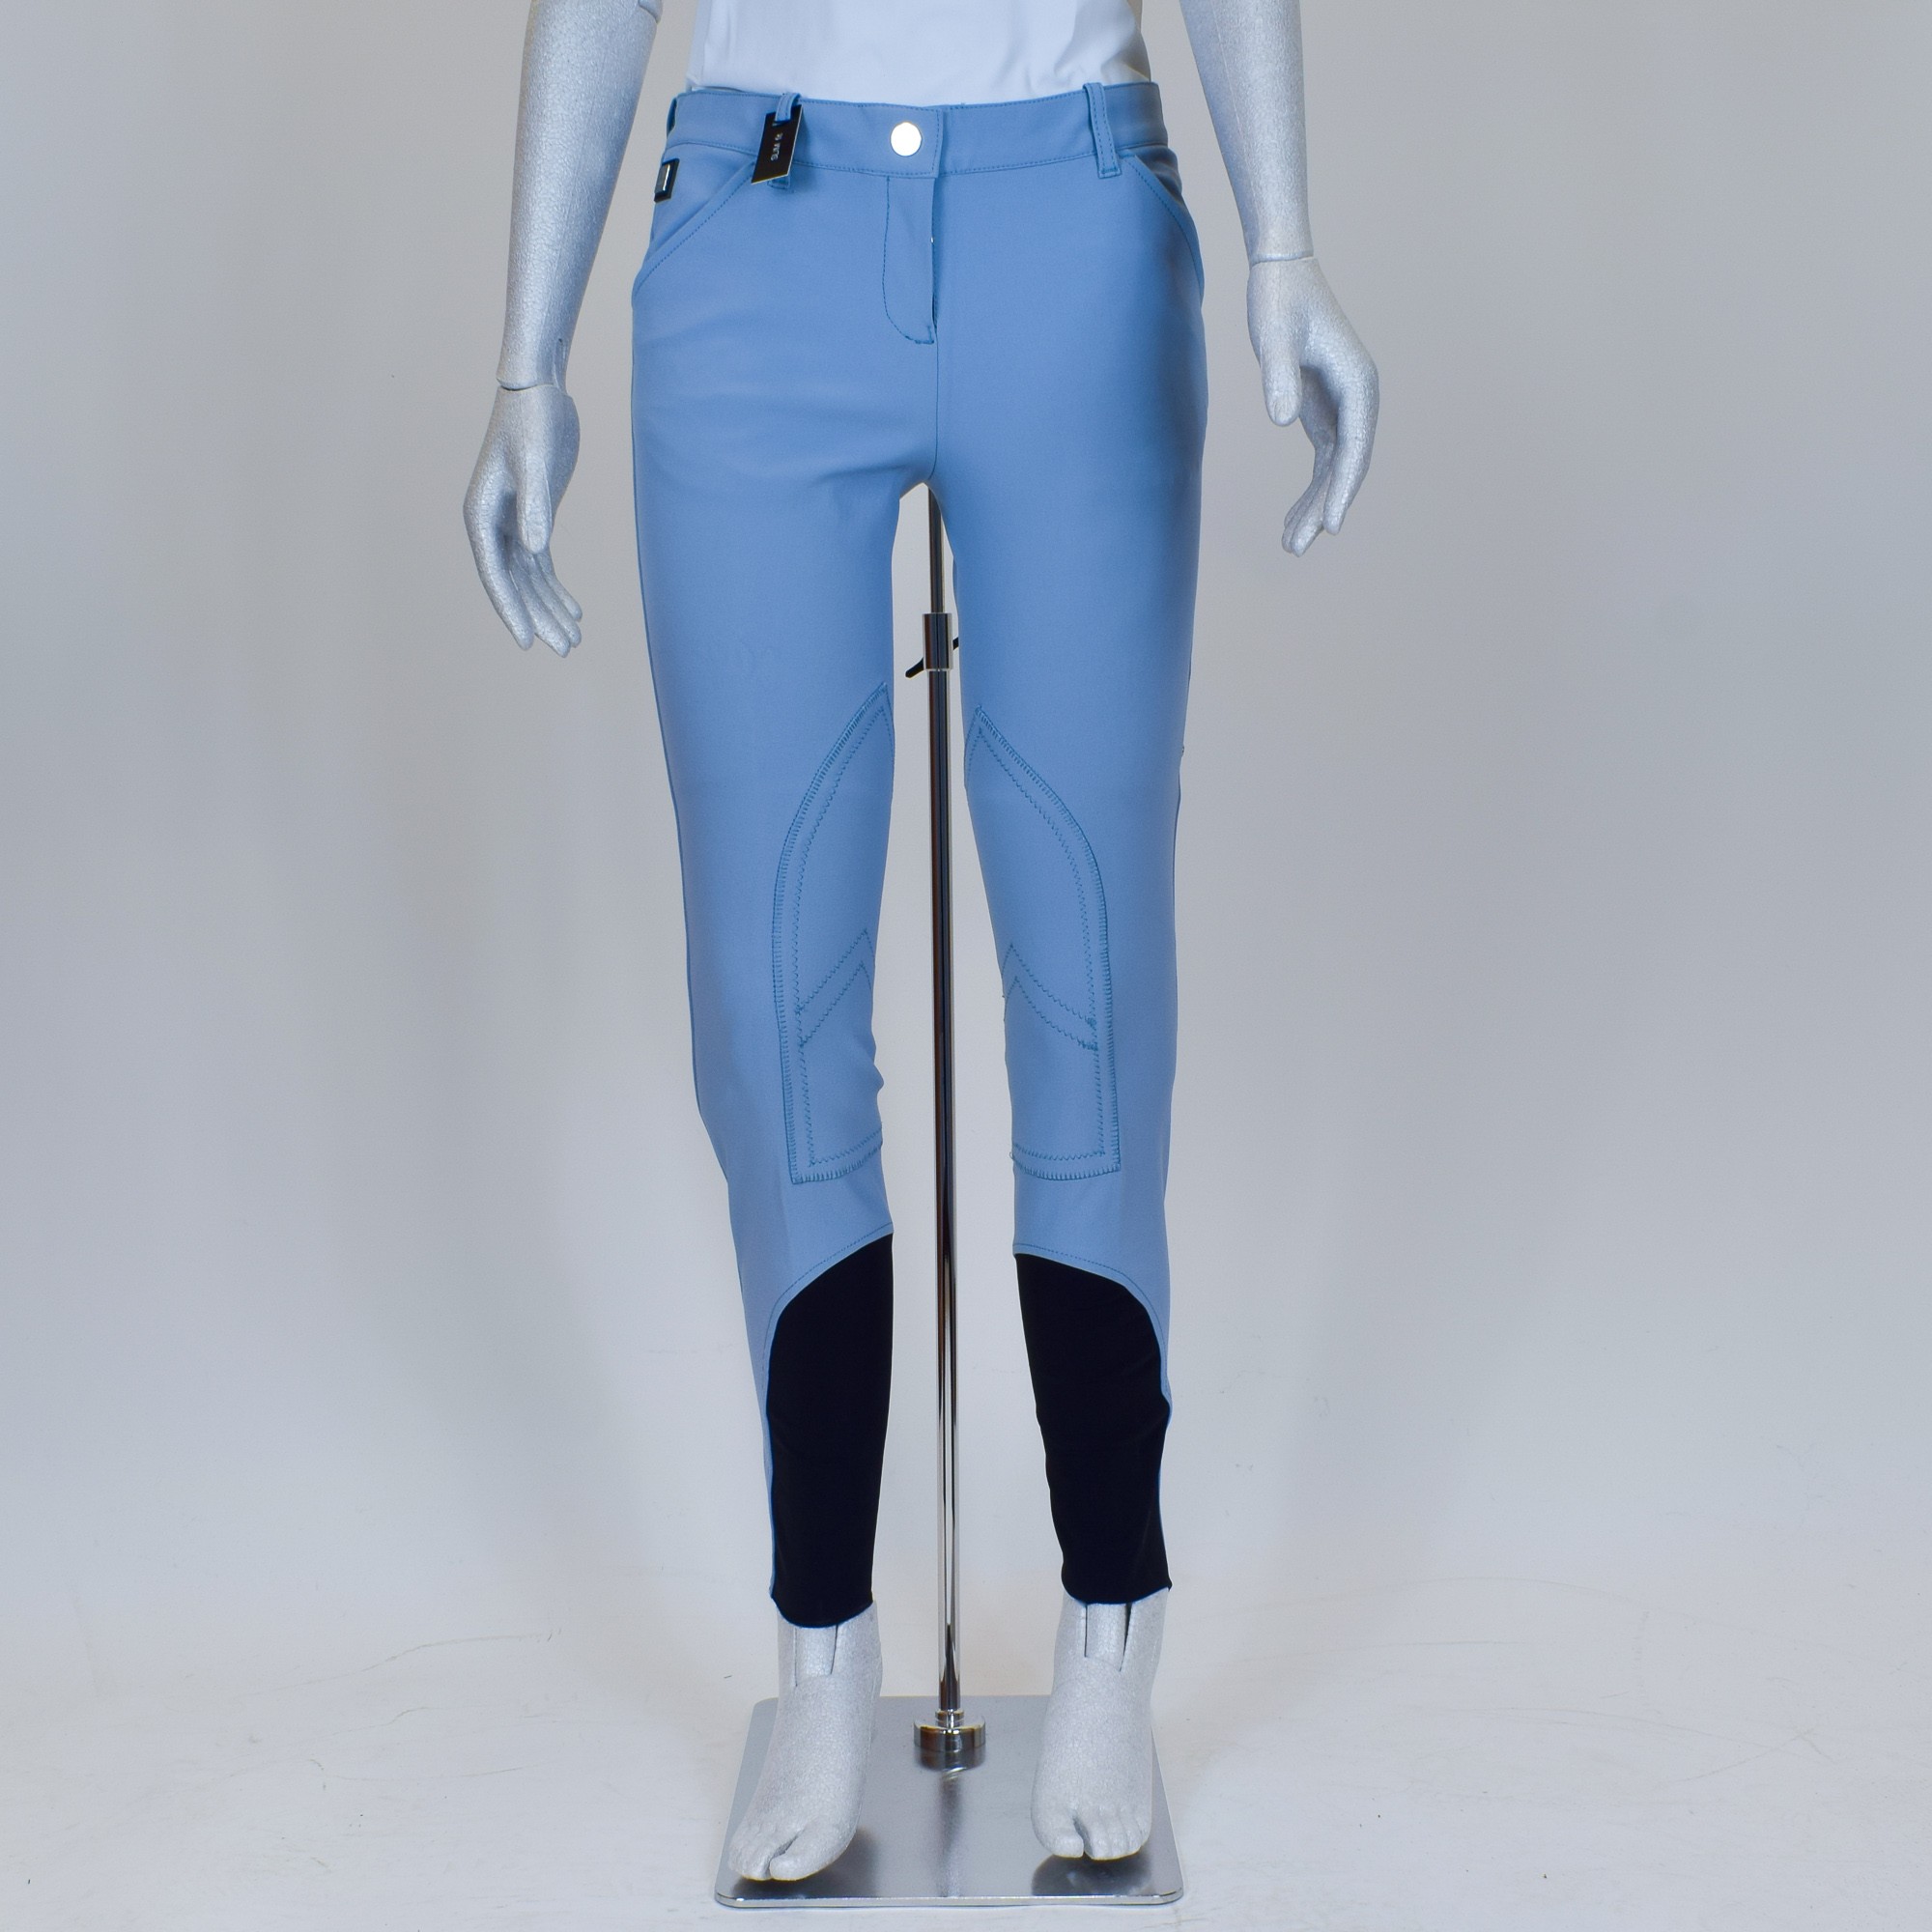 Pantaloni donna Equiline Boston - Le Selle - Attrezzature e abbigliamento  per l'equitazione